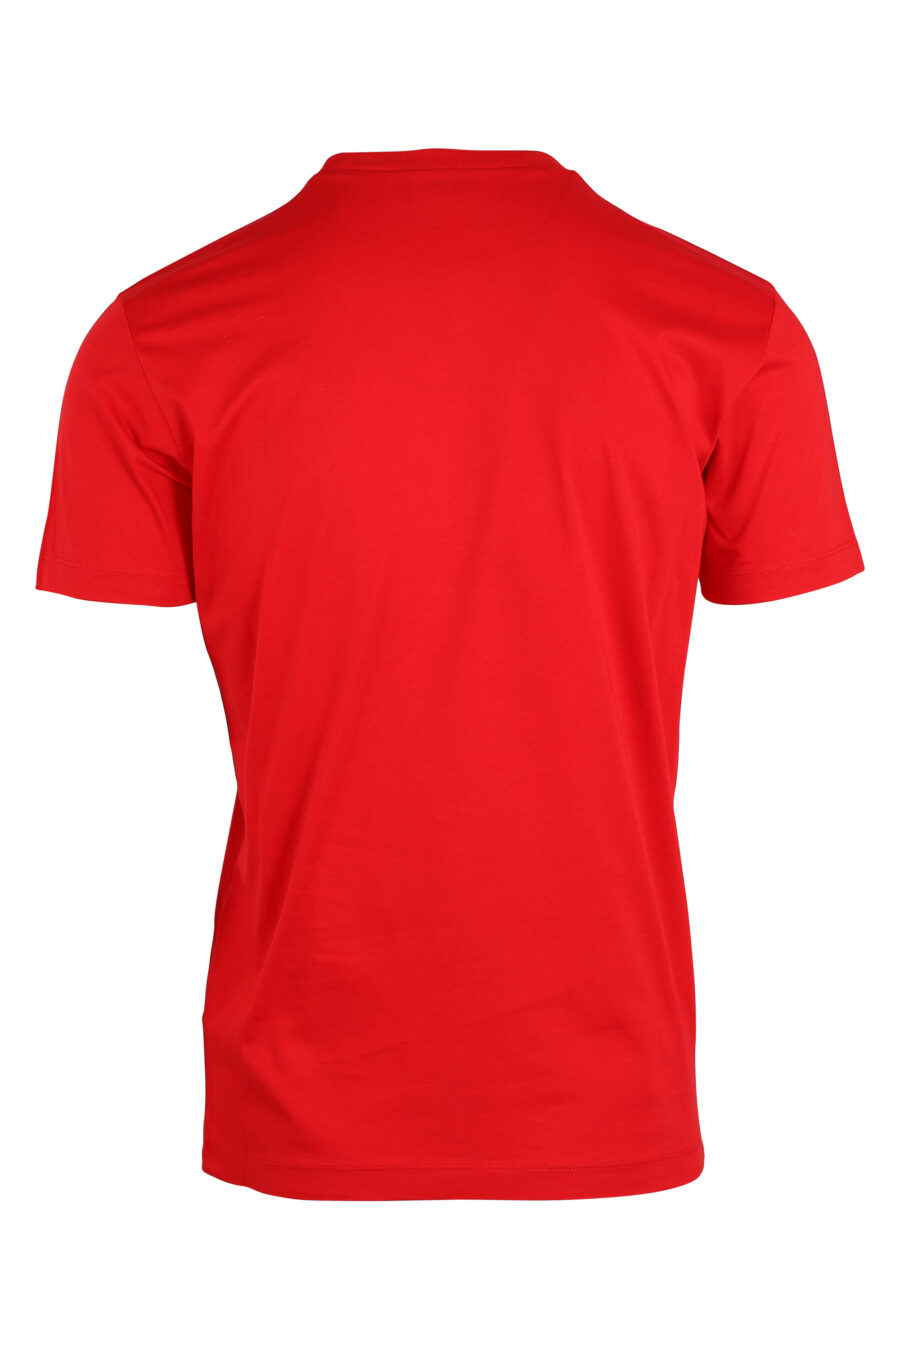 T-shirt vermelha com maxilogo "i can't" - IMG 0640